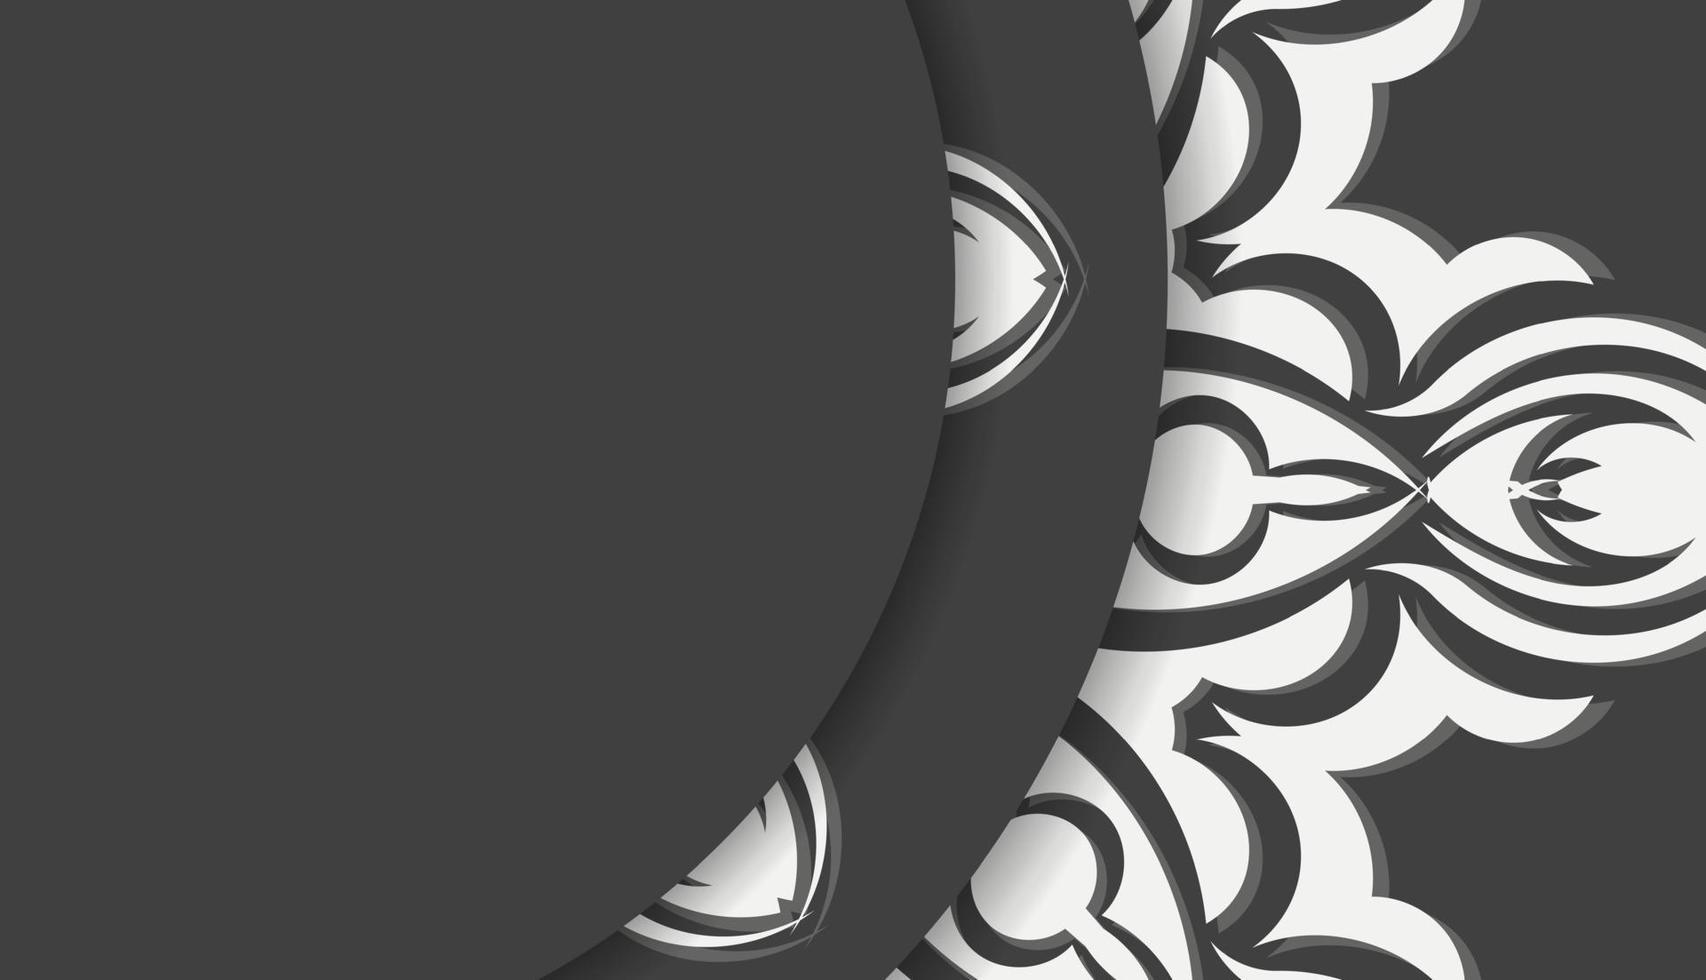 zwart banier met oud wit patroon en plaats voor tekst vector